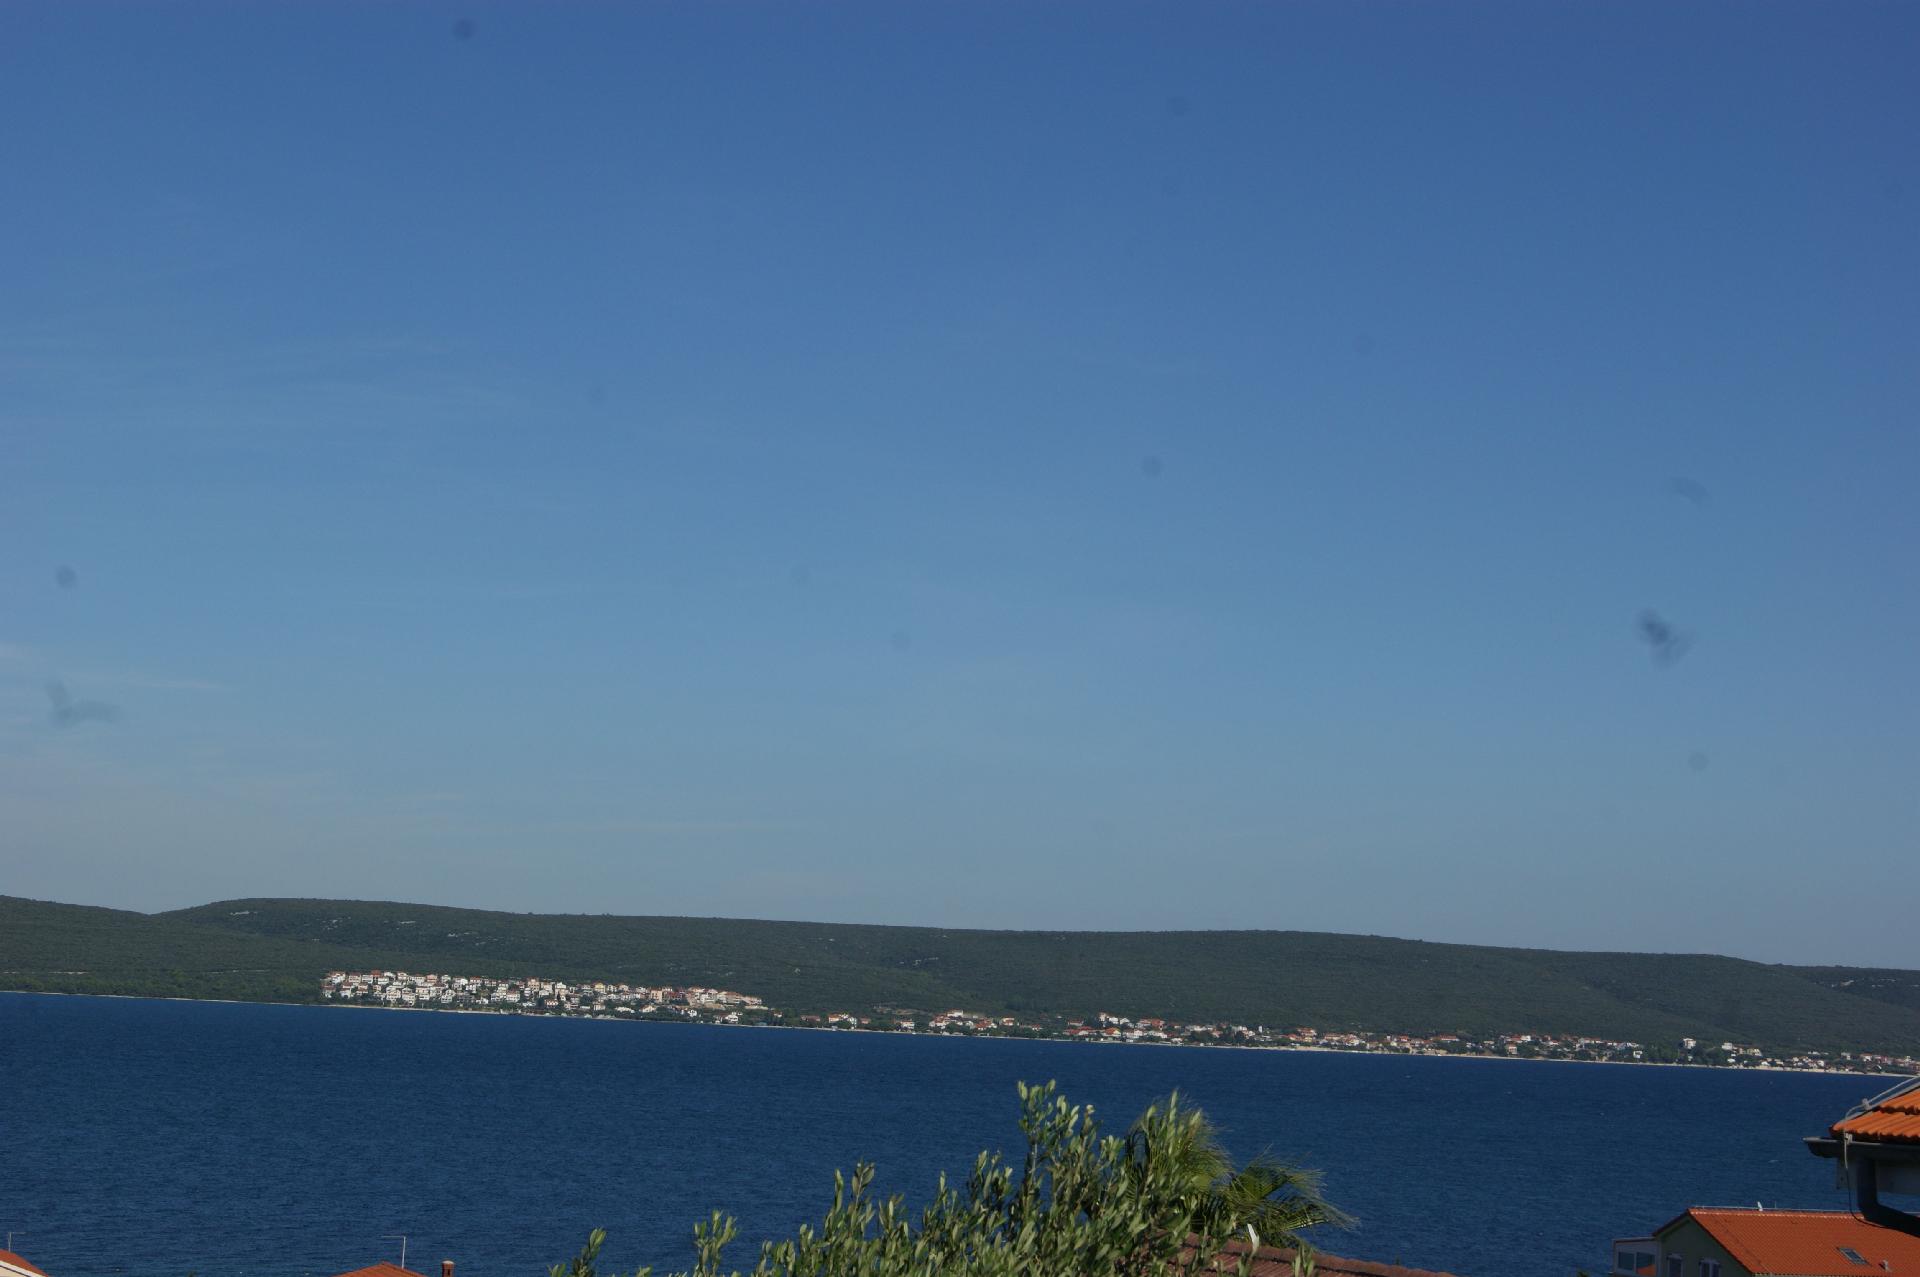 Ferienwohnung für vier Personen mit Balkon im Ferienwohnung in Kroatien